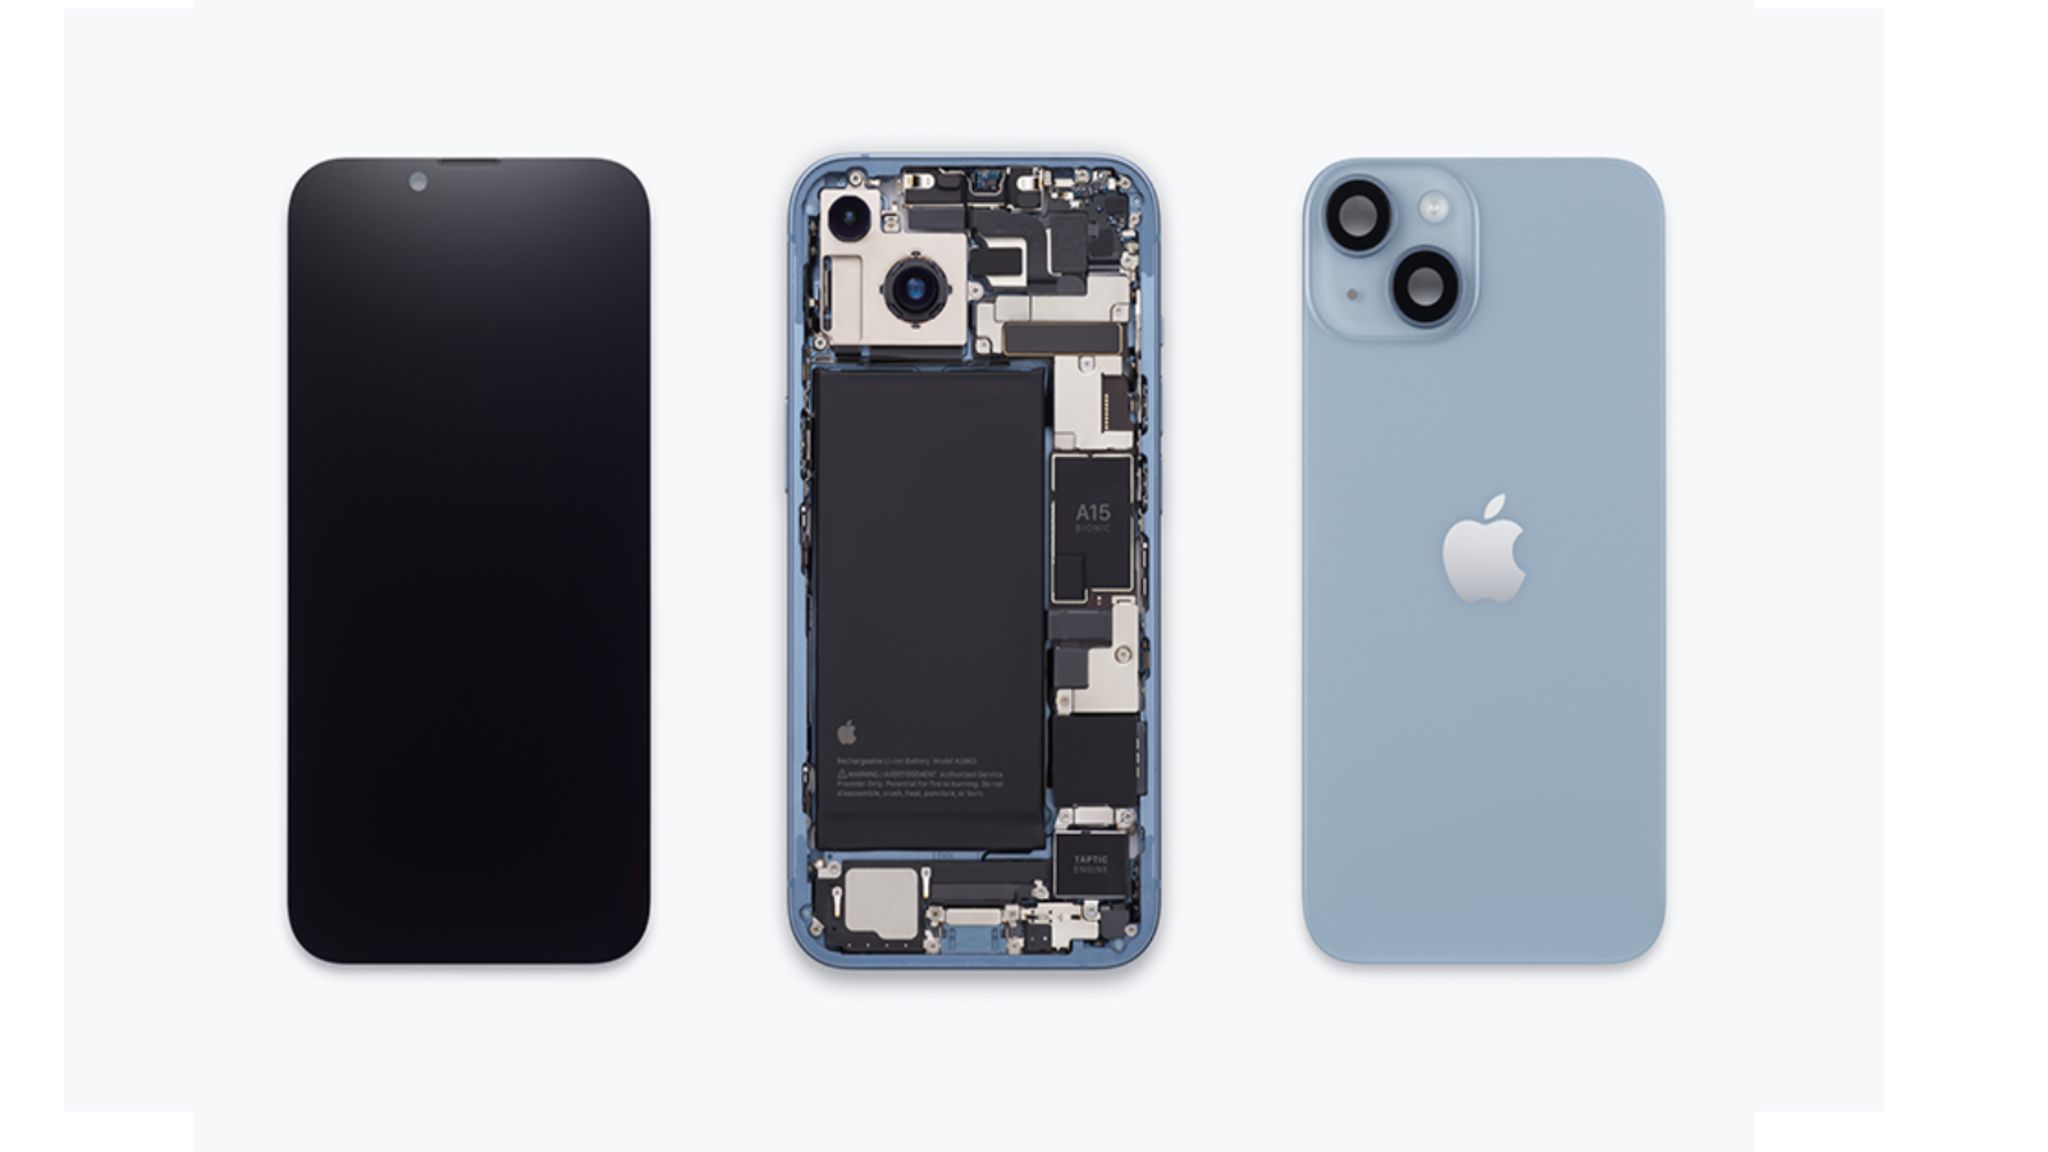 Refurbished-Deal bei : iPhone 12: Hier gibt es das Apple-Handy